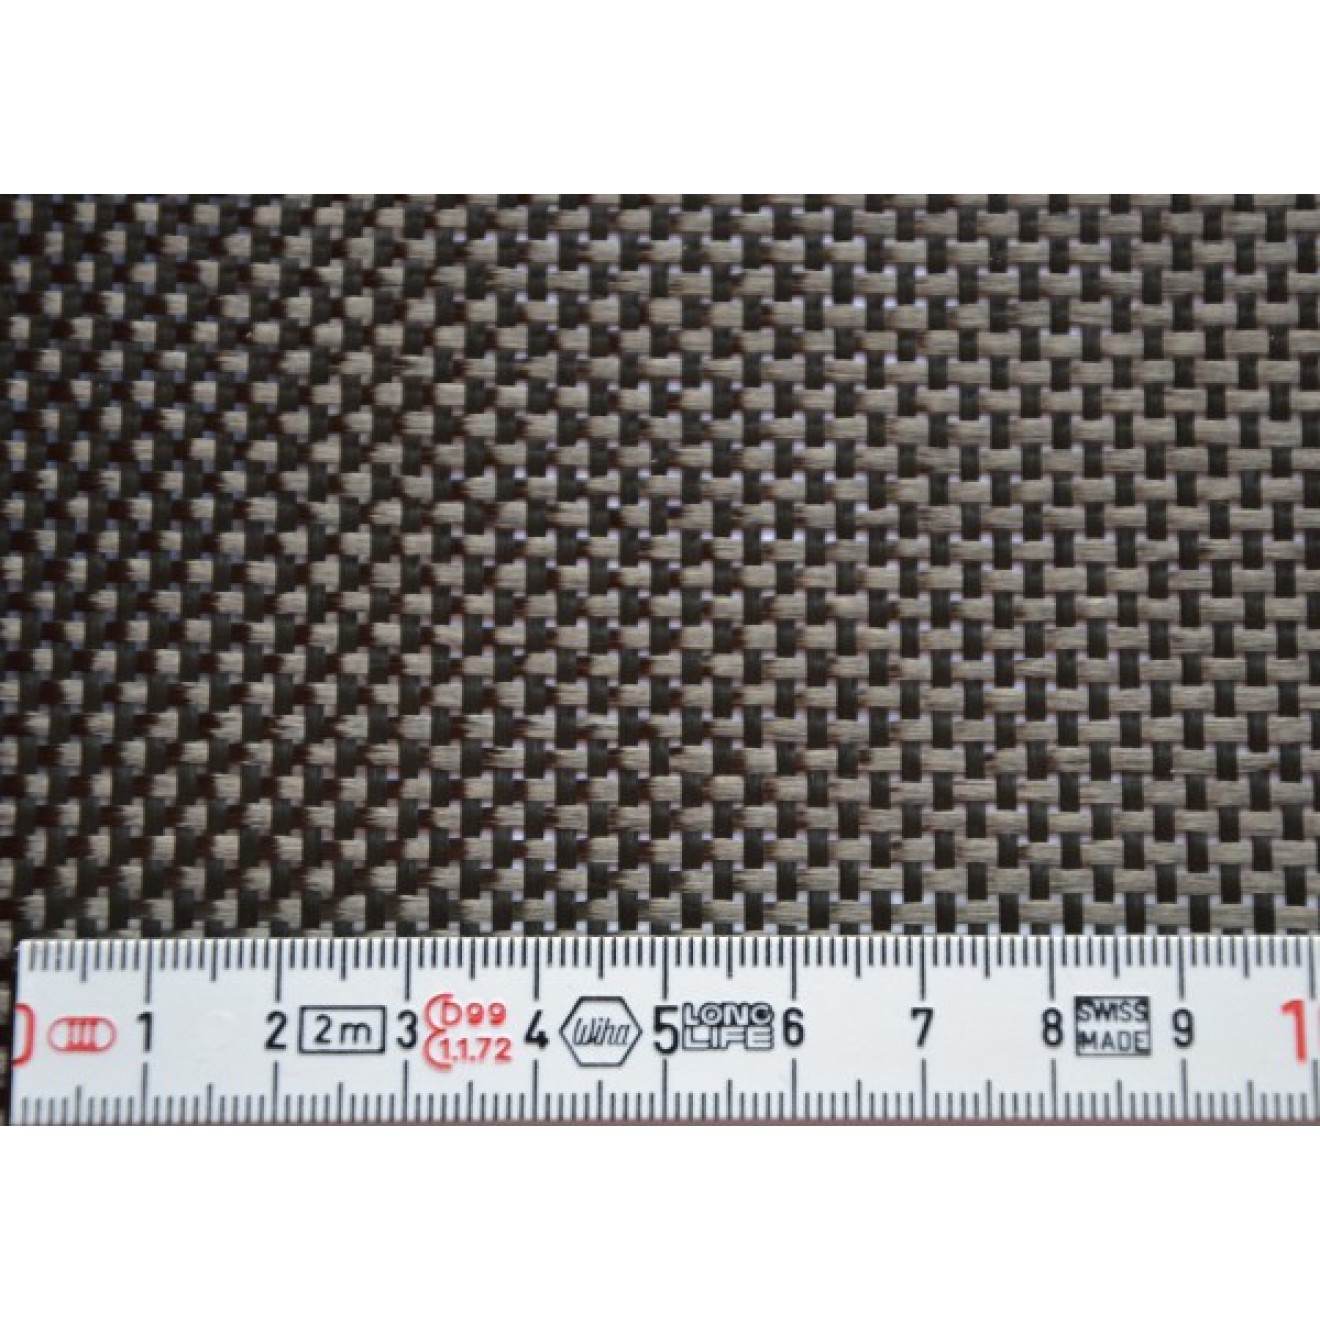 Woven carbon fiber fabric 3K, 160g/m² plain weave